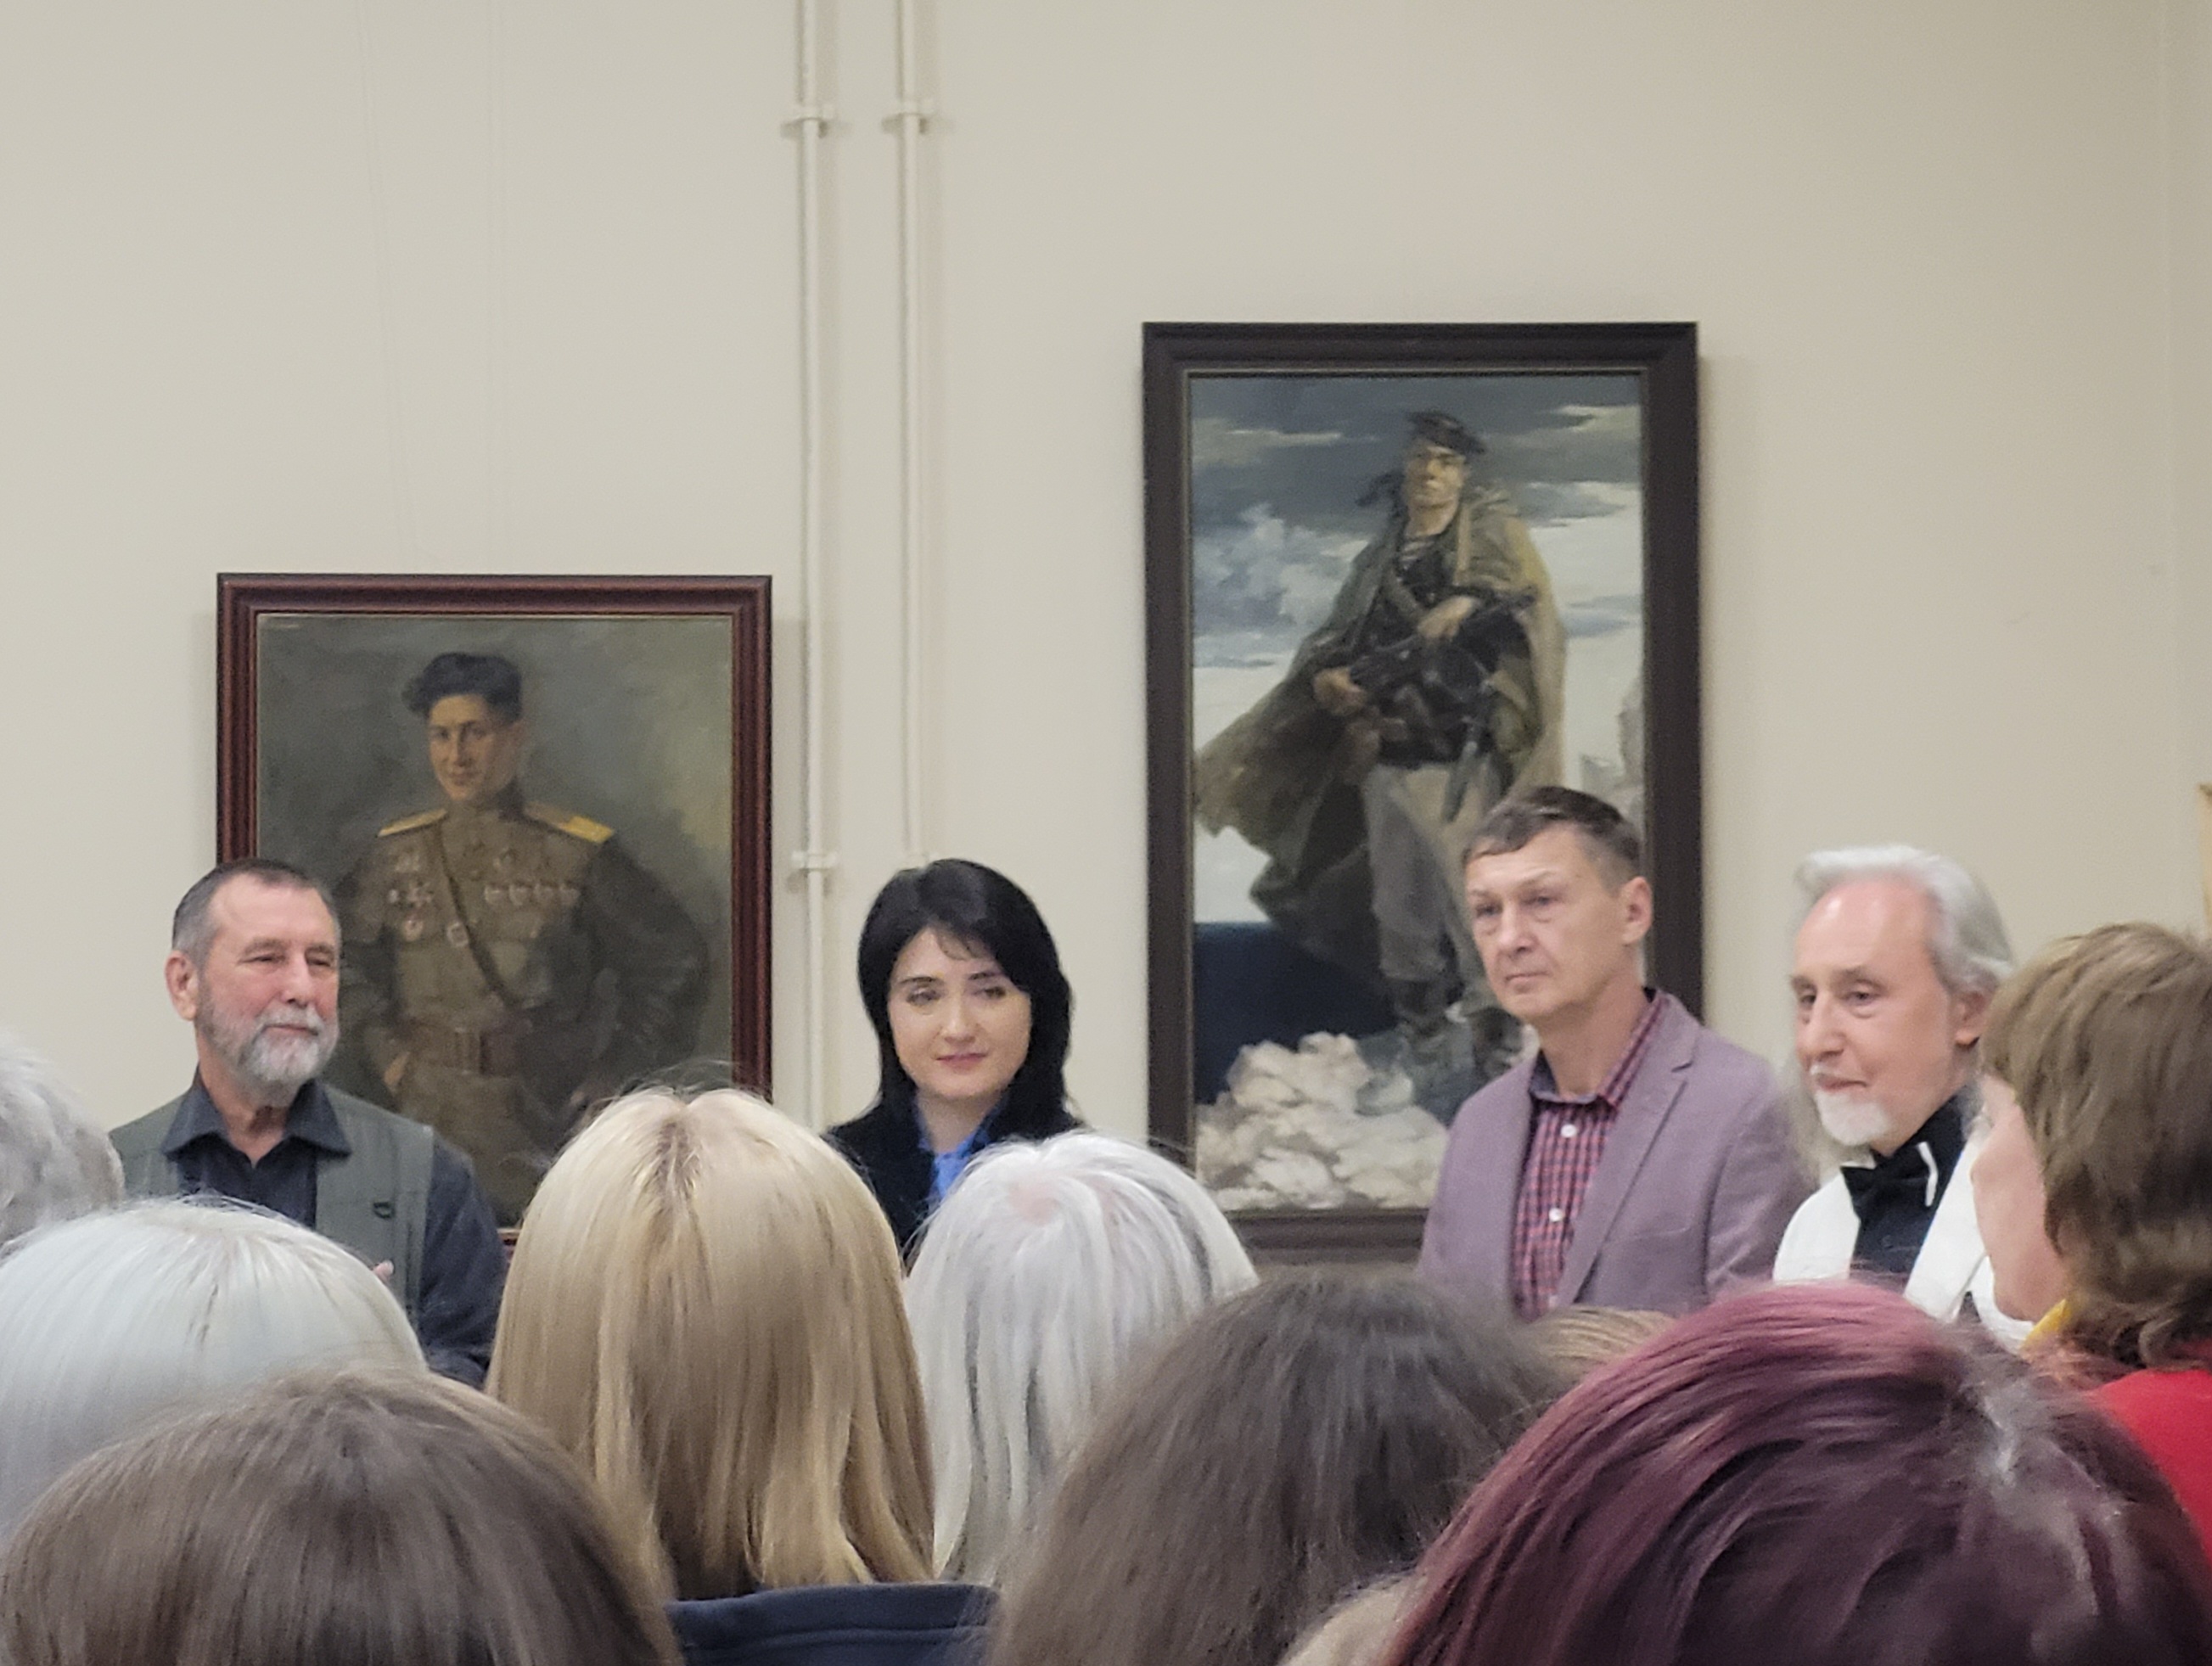 Напутствие молодым художникам (крайний слева – Р.Лукьянов, крайний справа – В.Величкевич). Фото Пугачевой Т.Л.